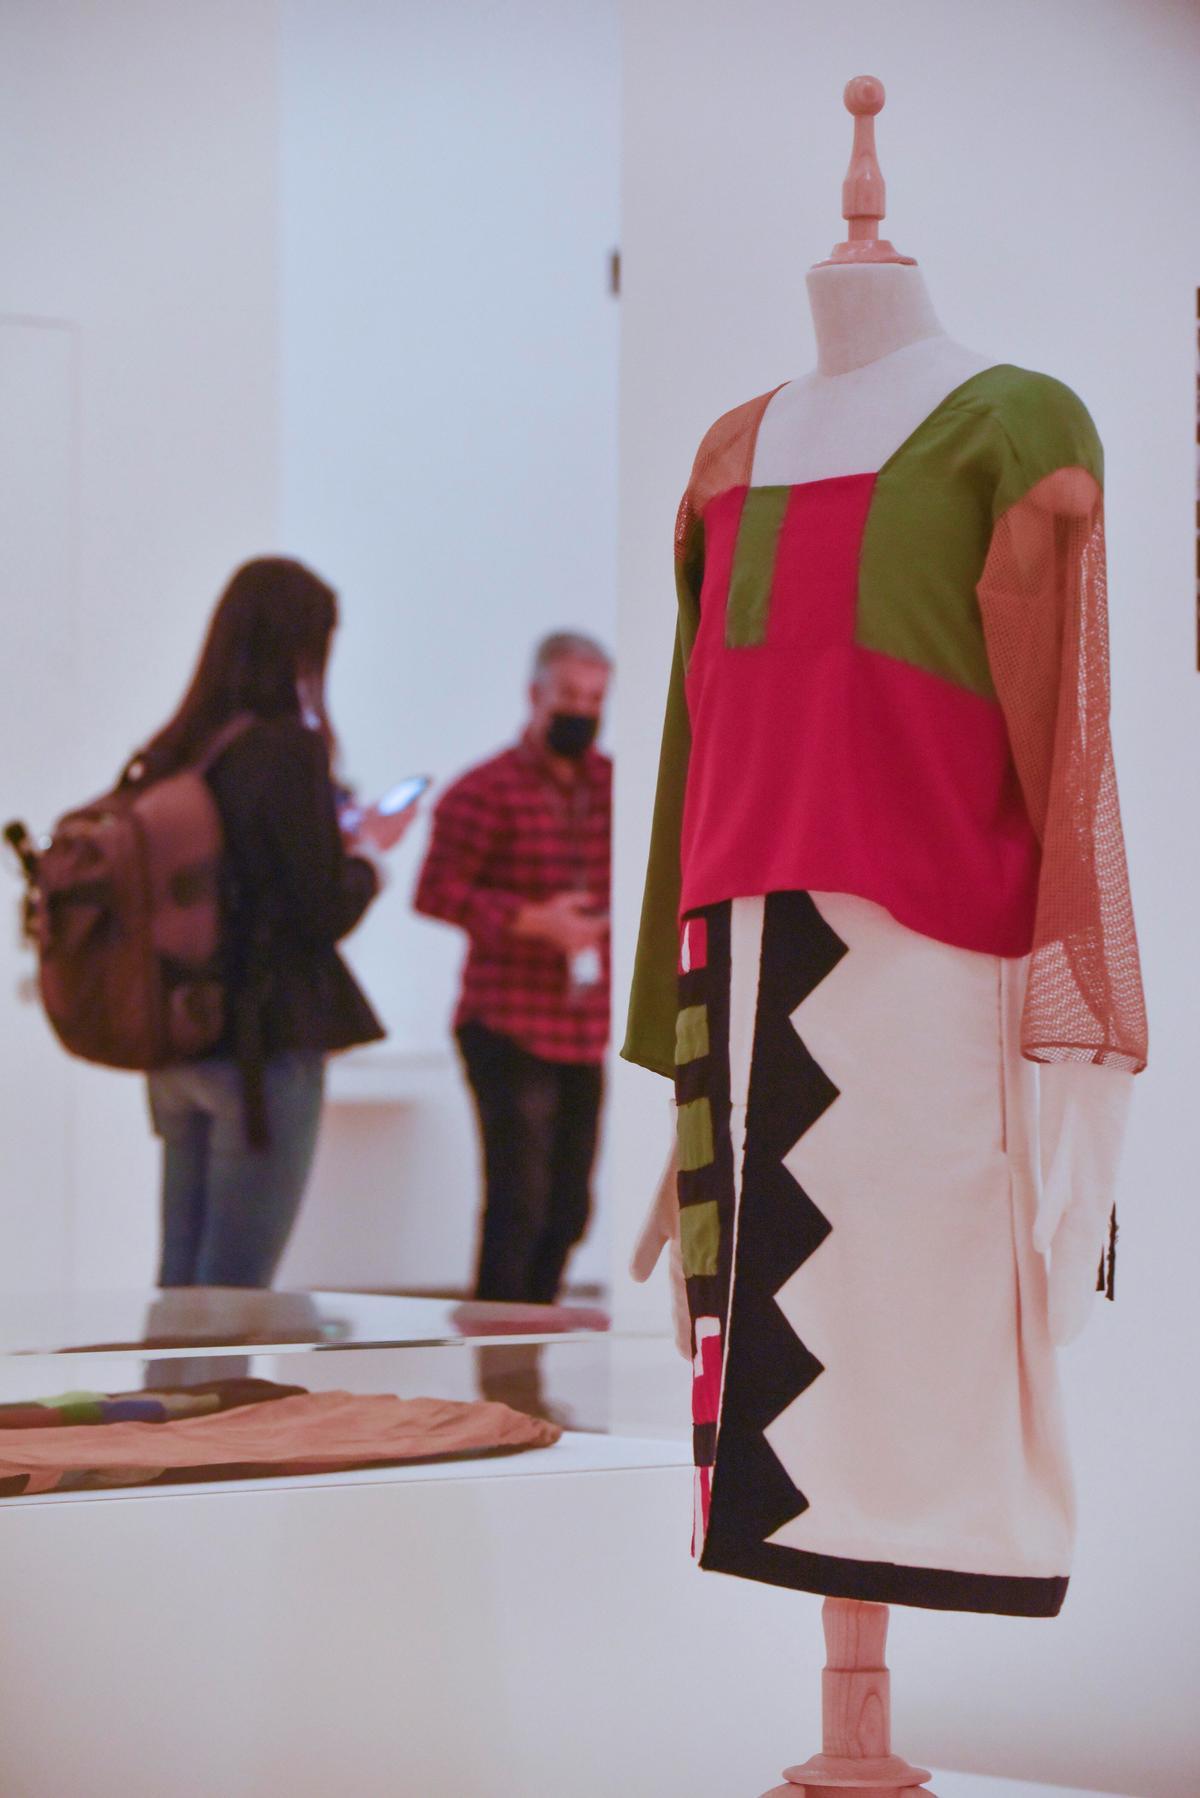 No quiero definir un arte femenino, el arte no debería tener género, pero el hecho es que ha sido así, ha explicado la comisaria de esta muestra, Christine Macel, del Centro Pompidou, en la conferencia de prensa de presentación de la exposición, organizada por el citado centro francés en colaboración con el Guggenheim, y patrocinada por la Fundación BBVA.